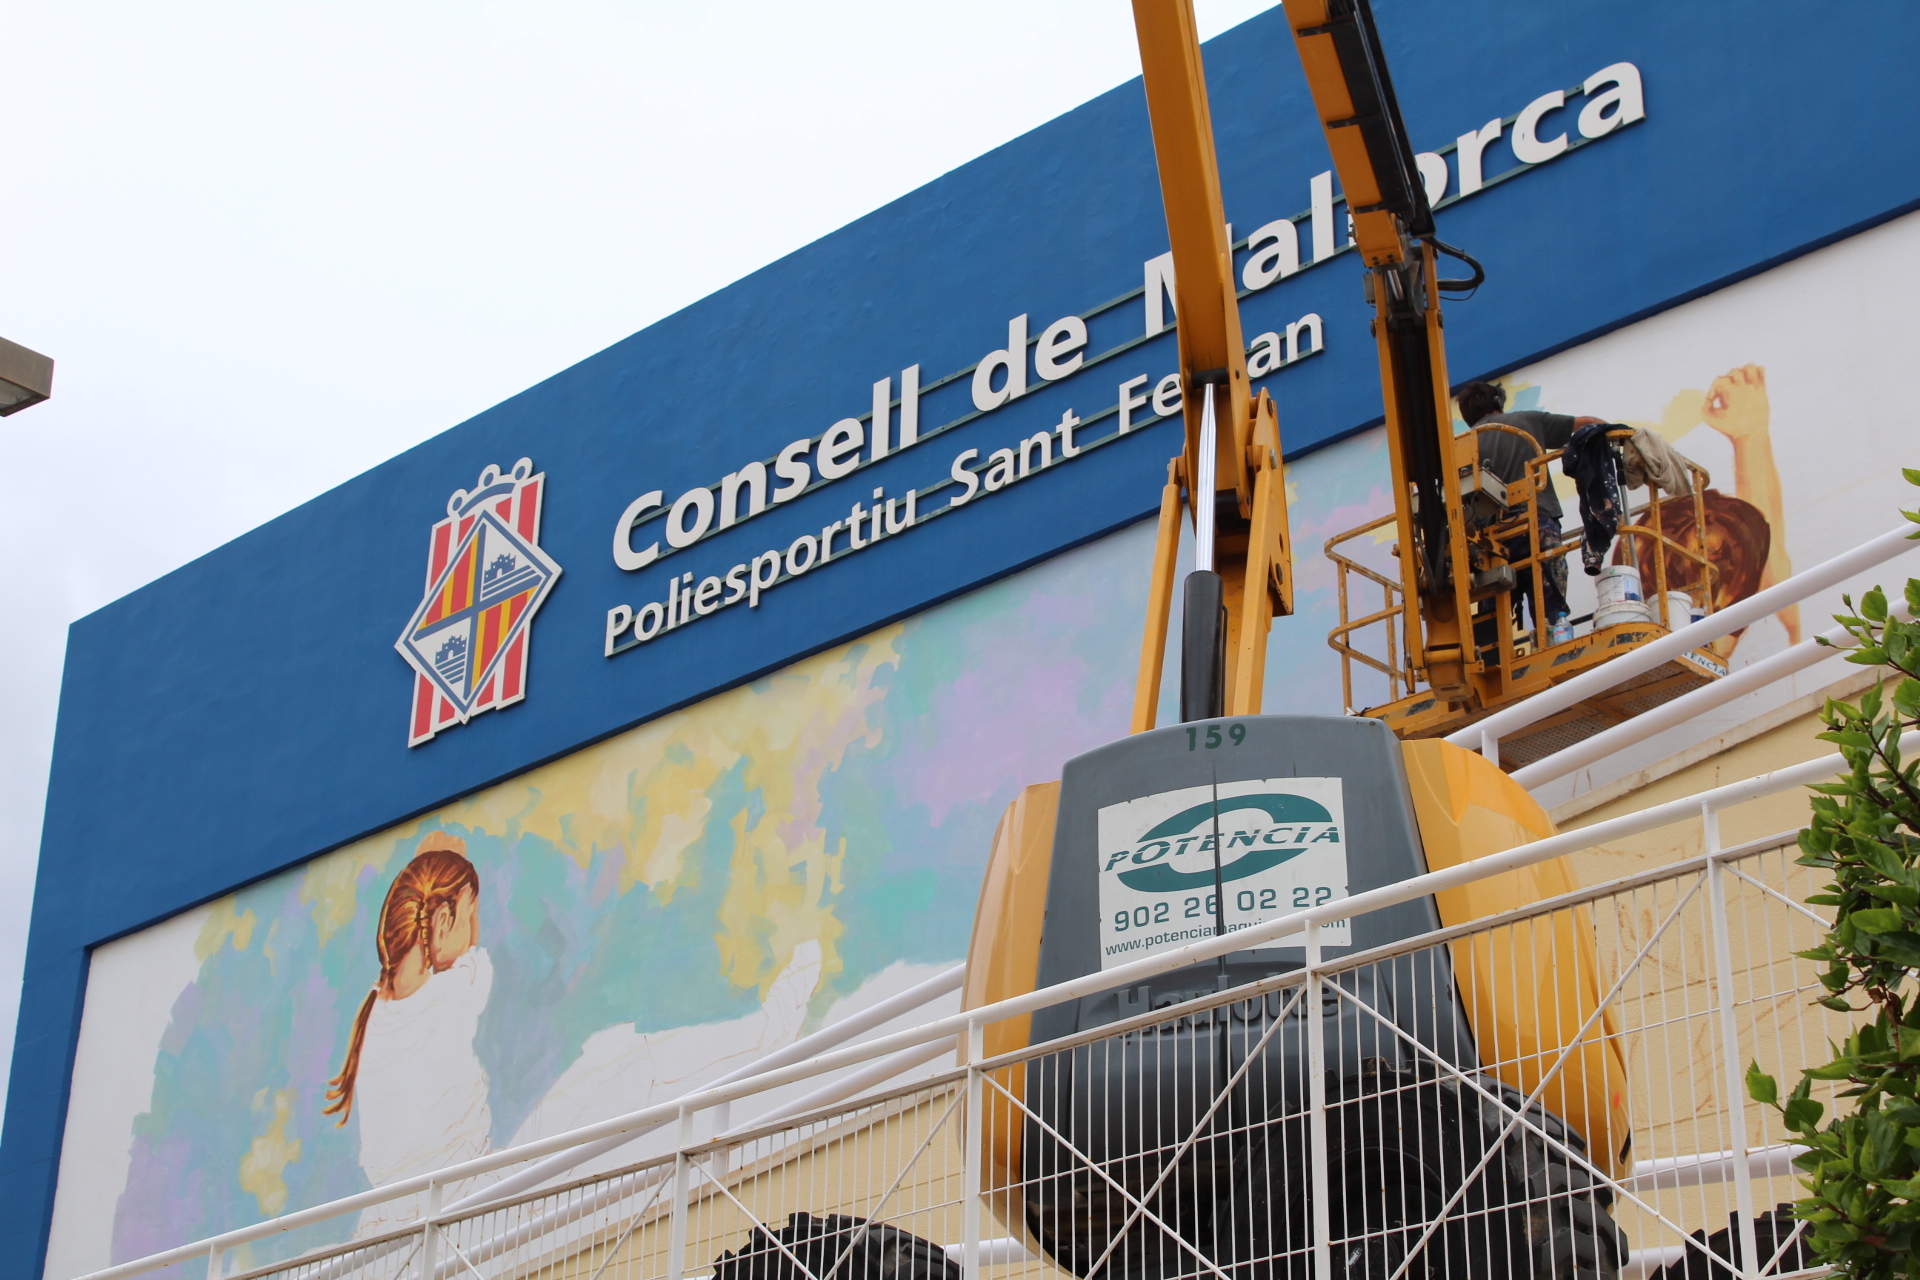 L'artista Joan Aguiló crea aquests dies un mural de gran format al Poliesportiu Sant Ferran del Consell de Mallorca.